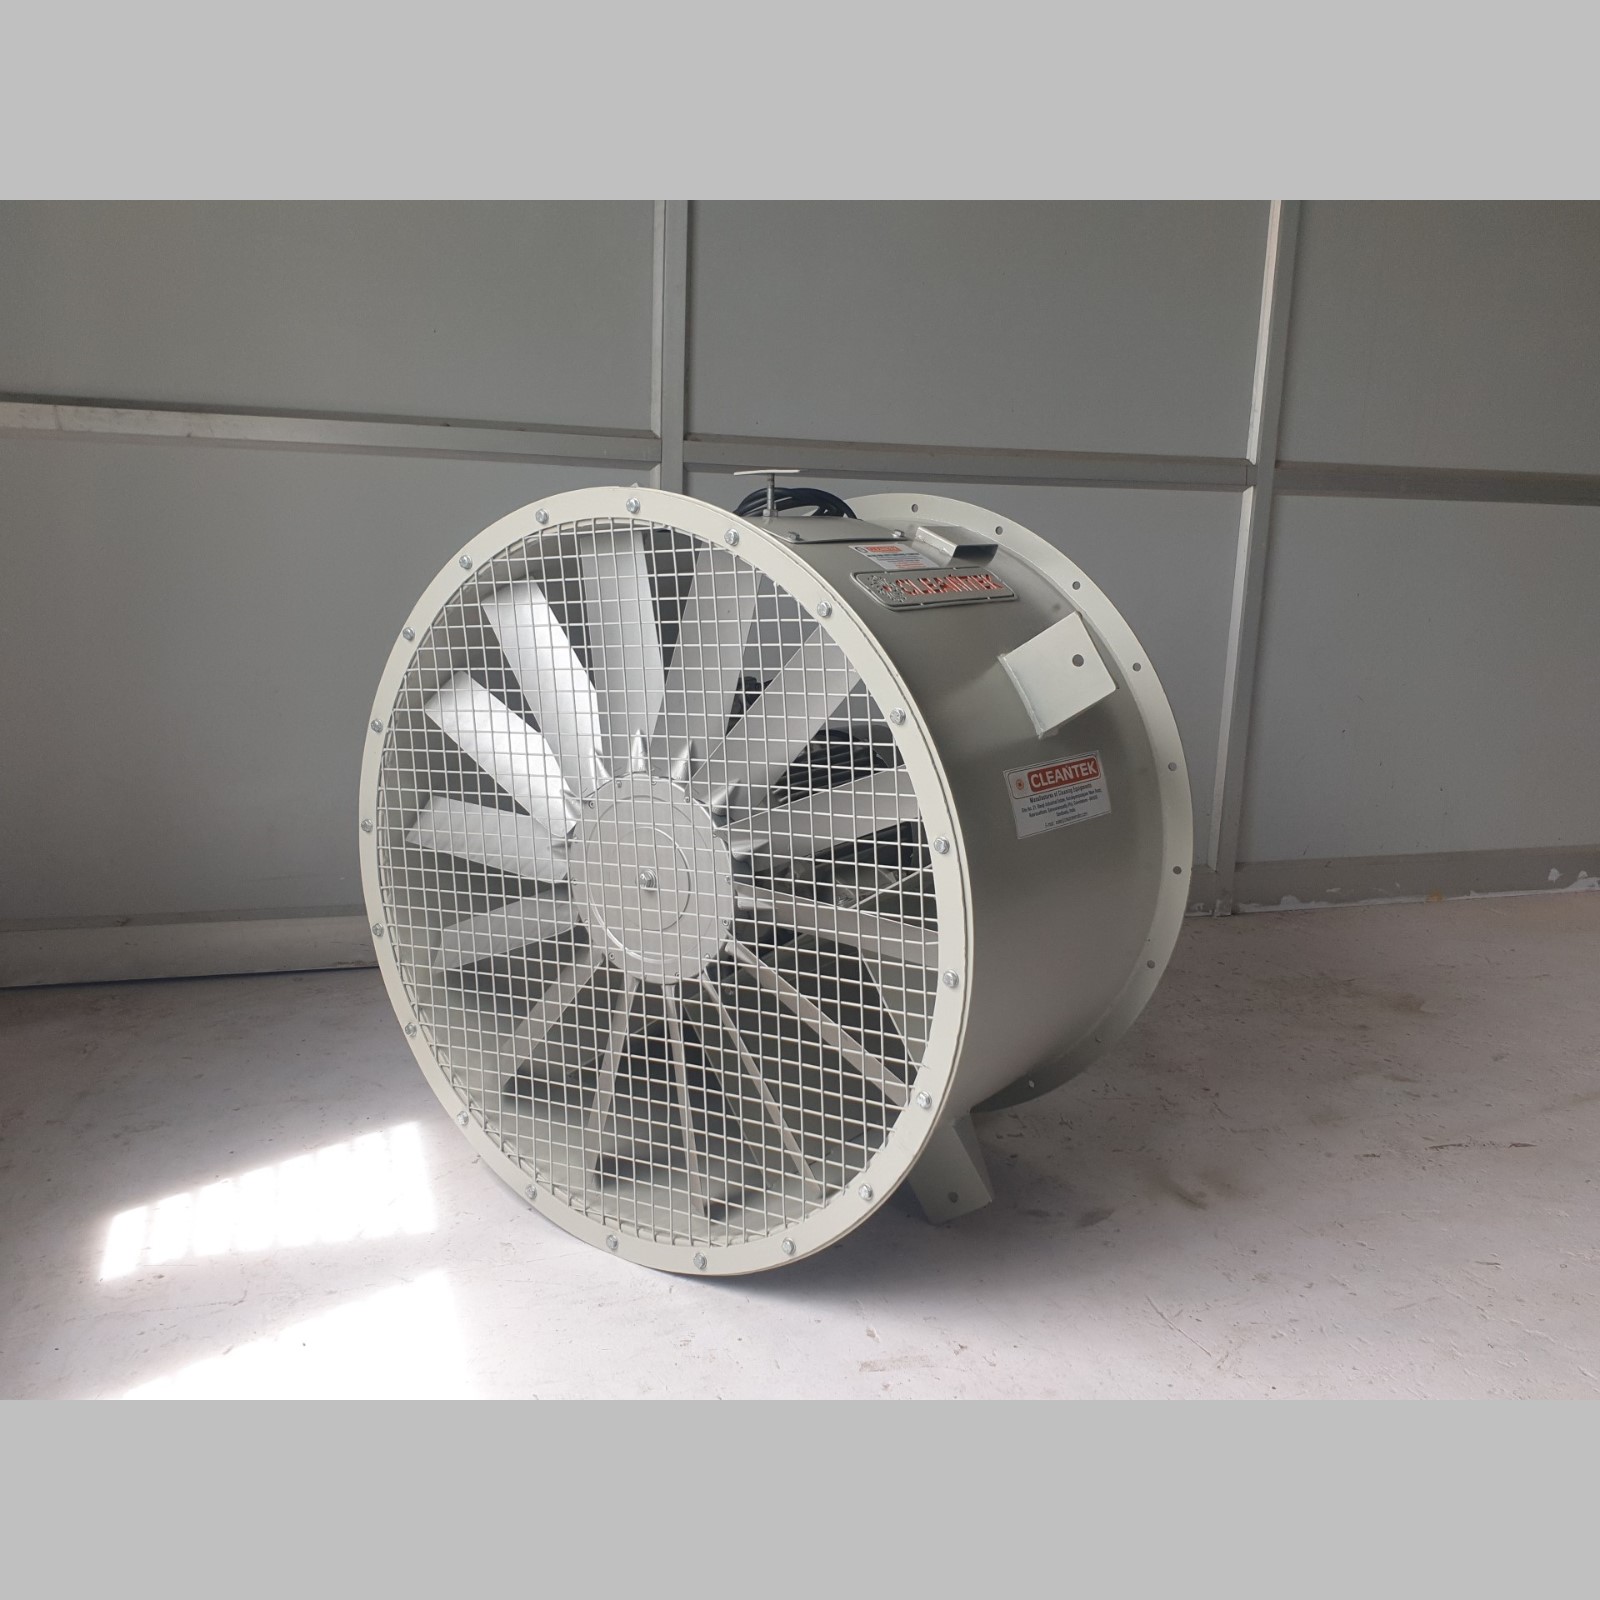 Axial blower fan